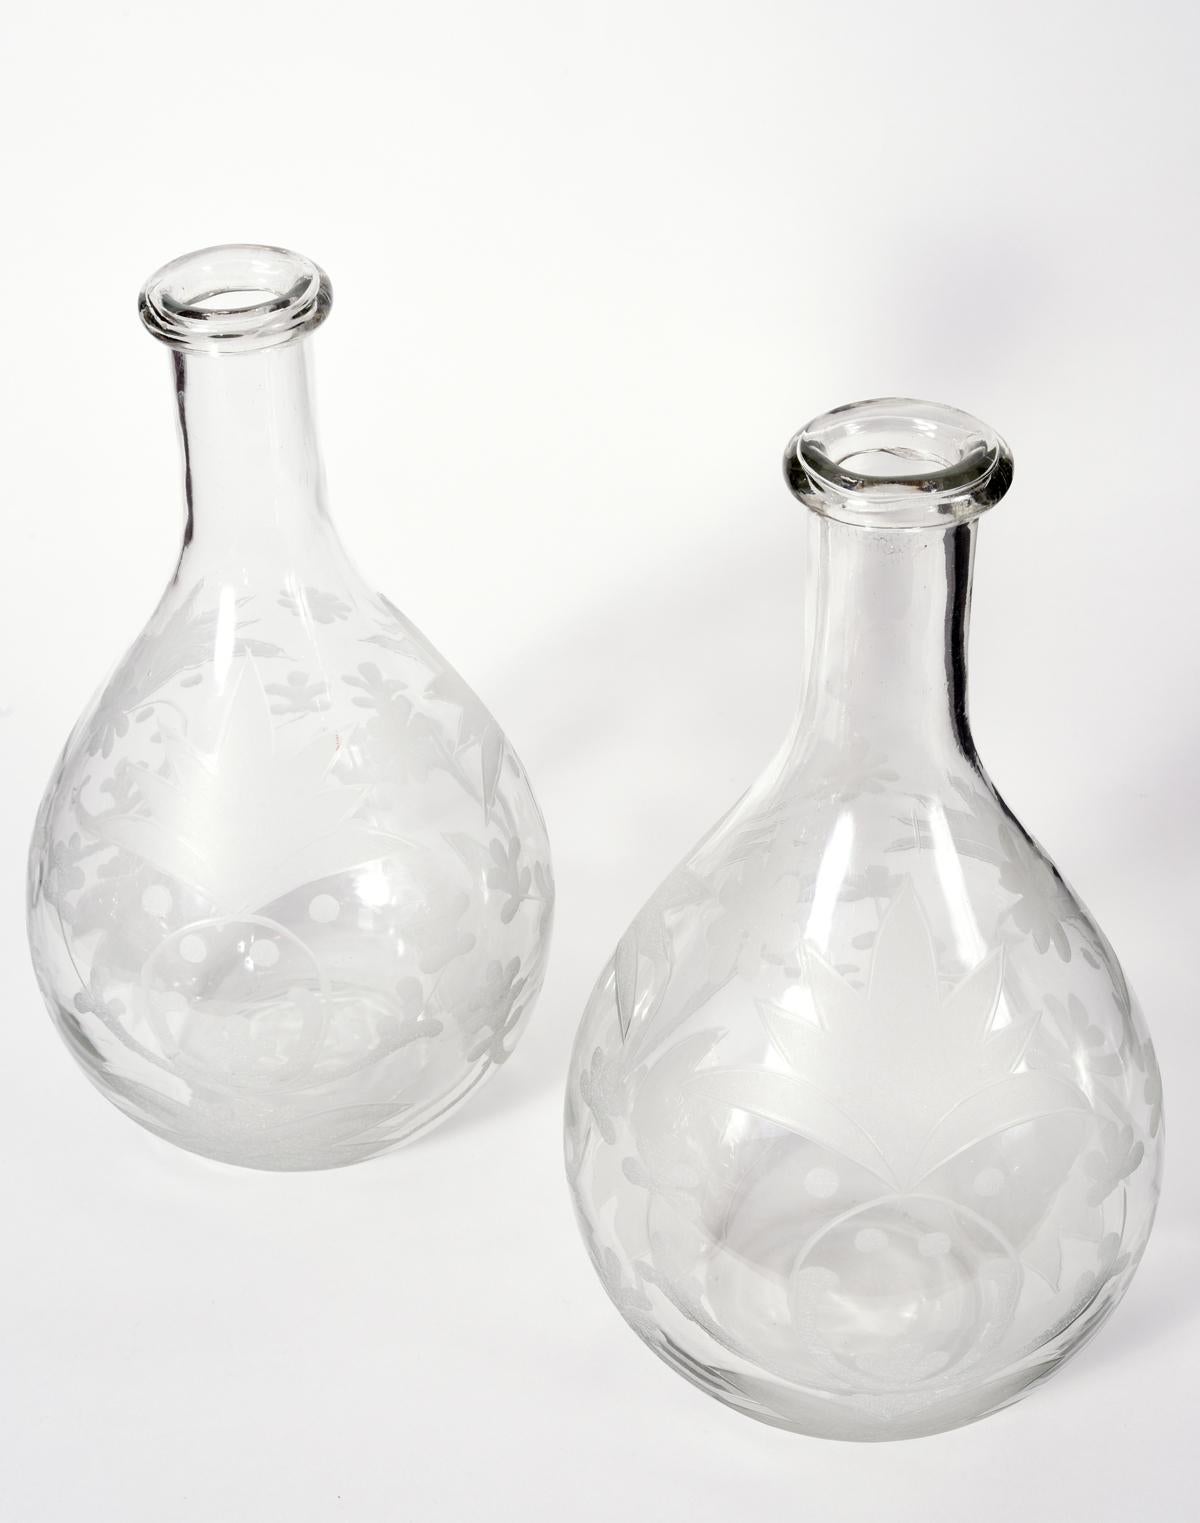 European Vintage Pair of Cut Glass Decorative Pieces